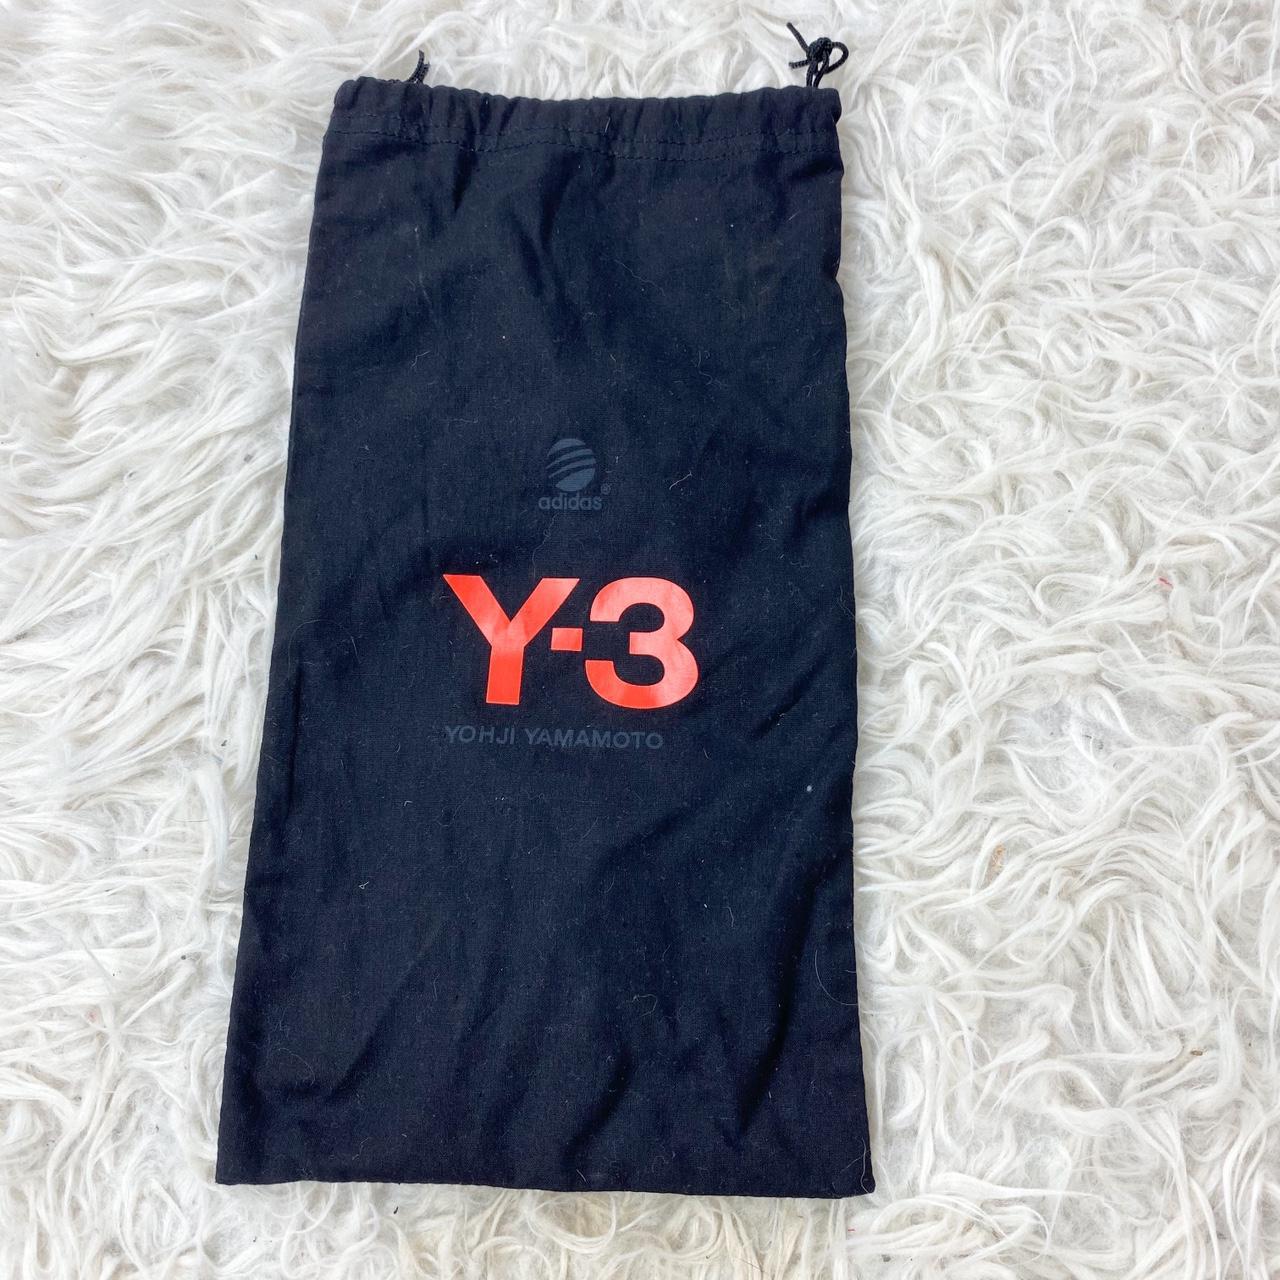 Product Image 1 - Y-3 Yohji Yamamoto Duster Bag